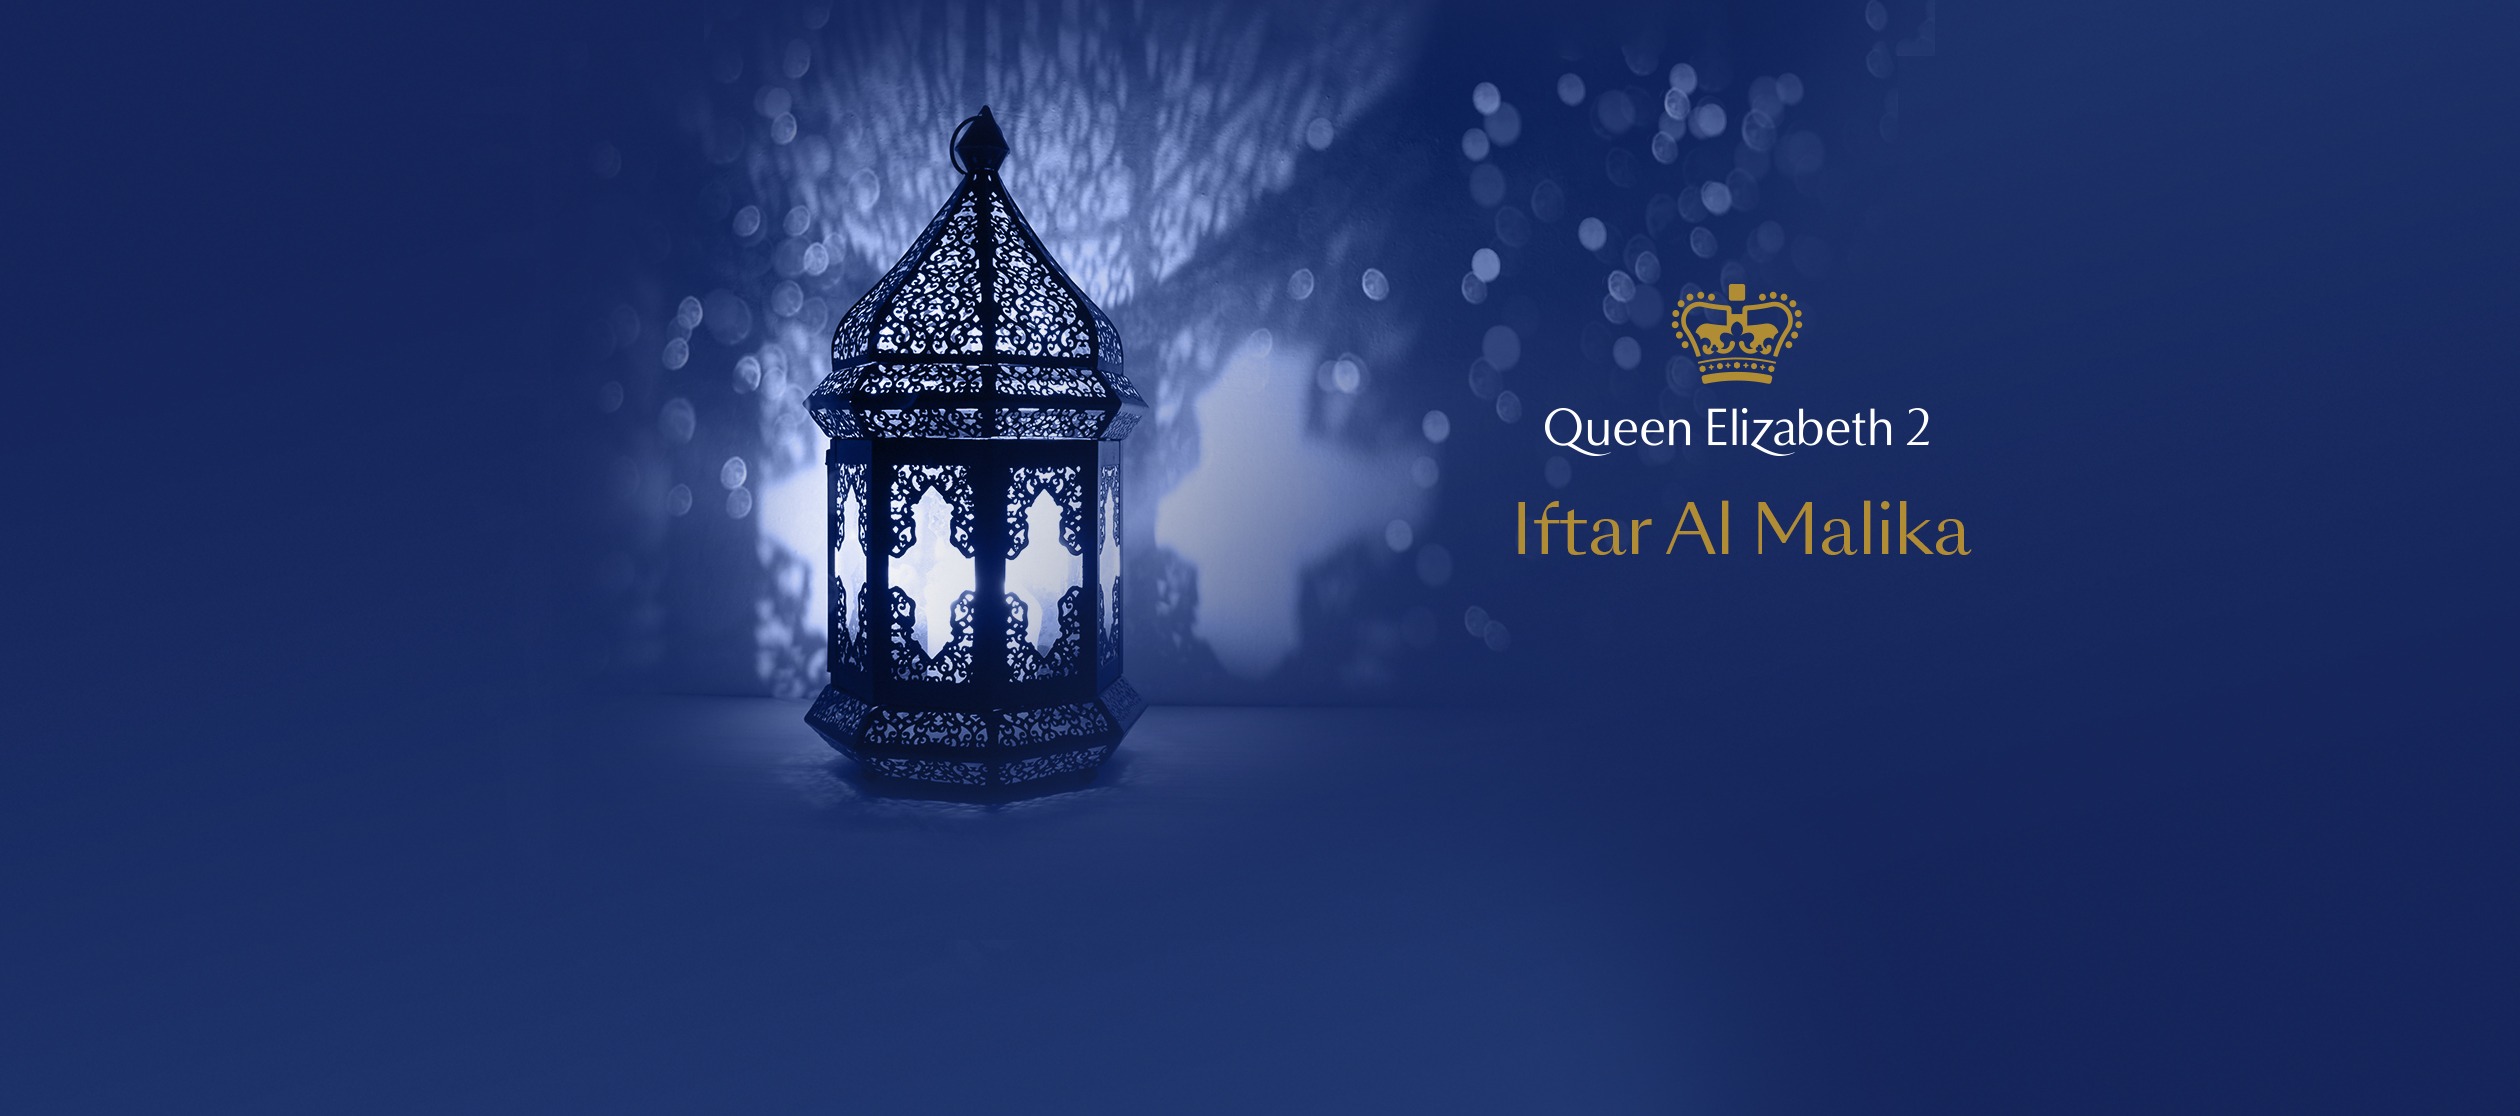 Iftar at Queen Elizabeth 2 - Coming Soon in UAE